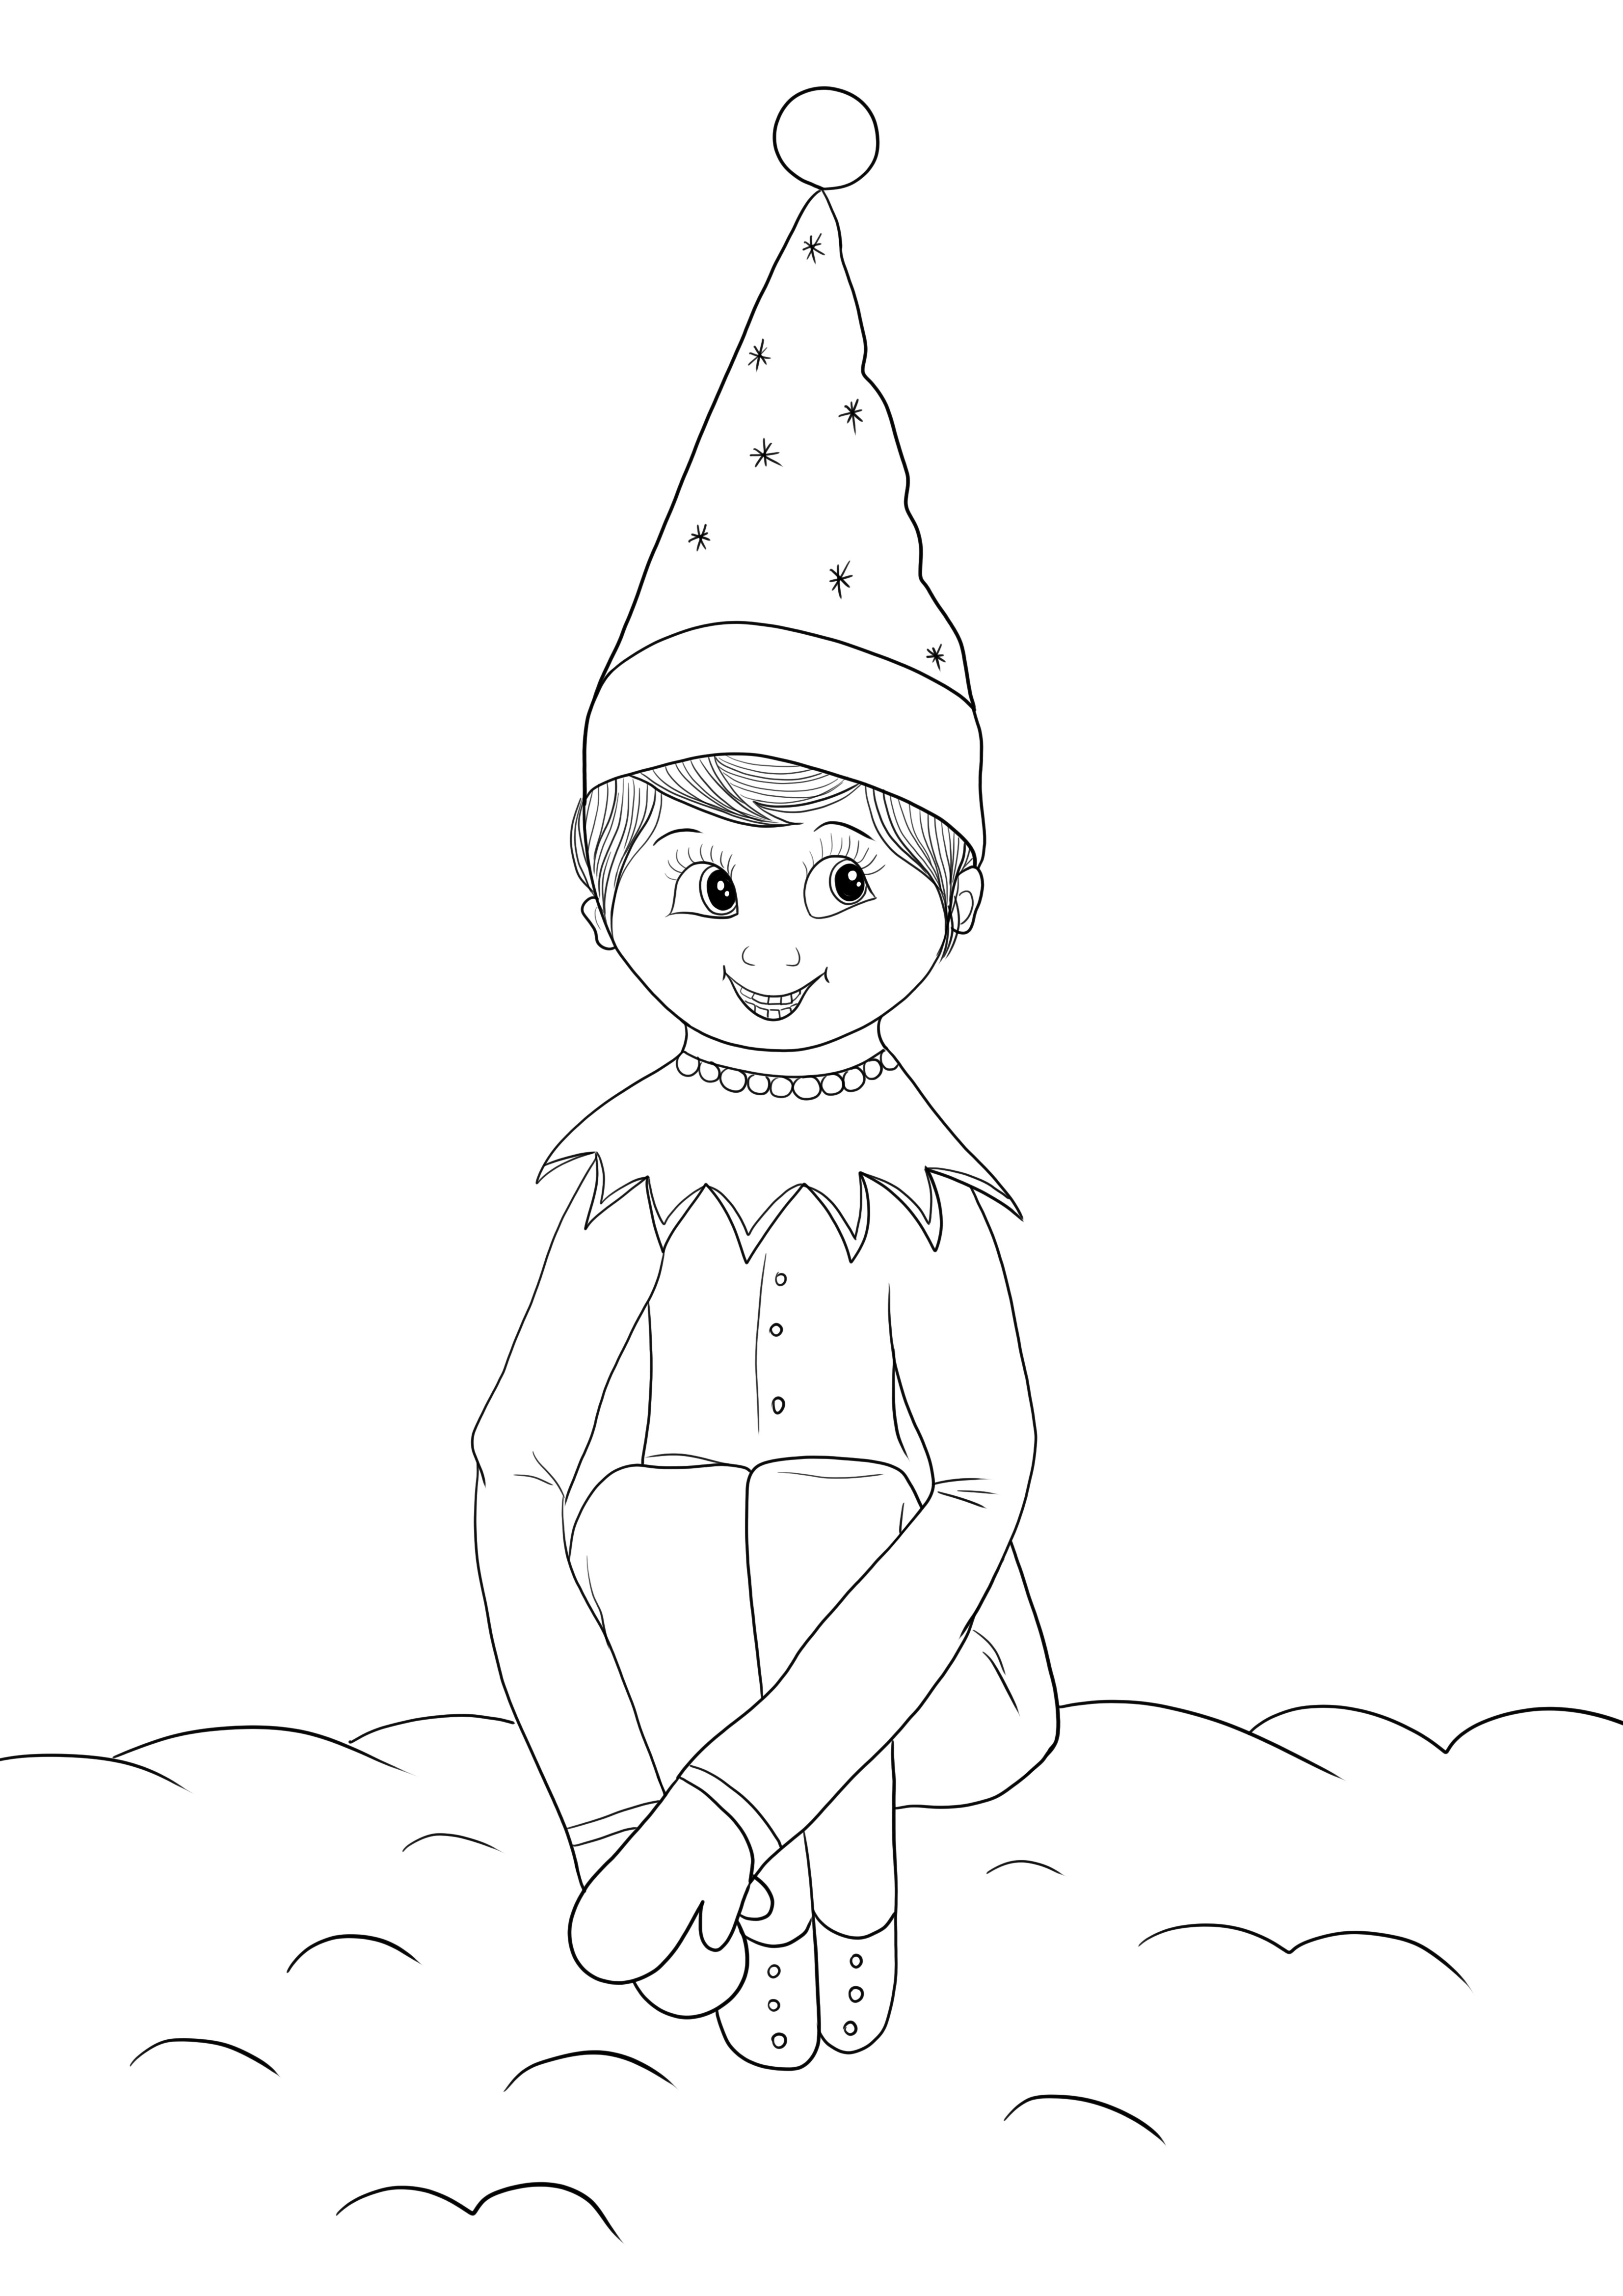 Dibujo de Elfo sentado en el estante para imprimir y colorear gratis